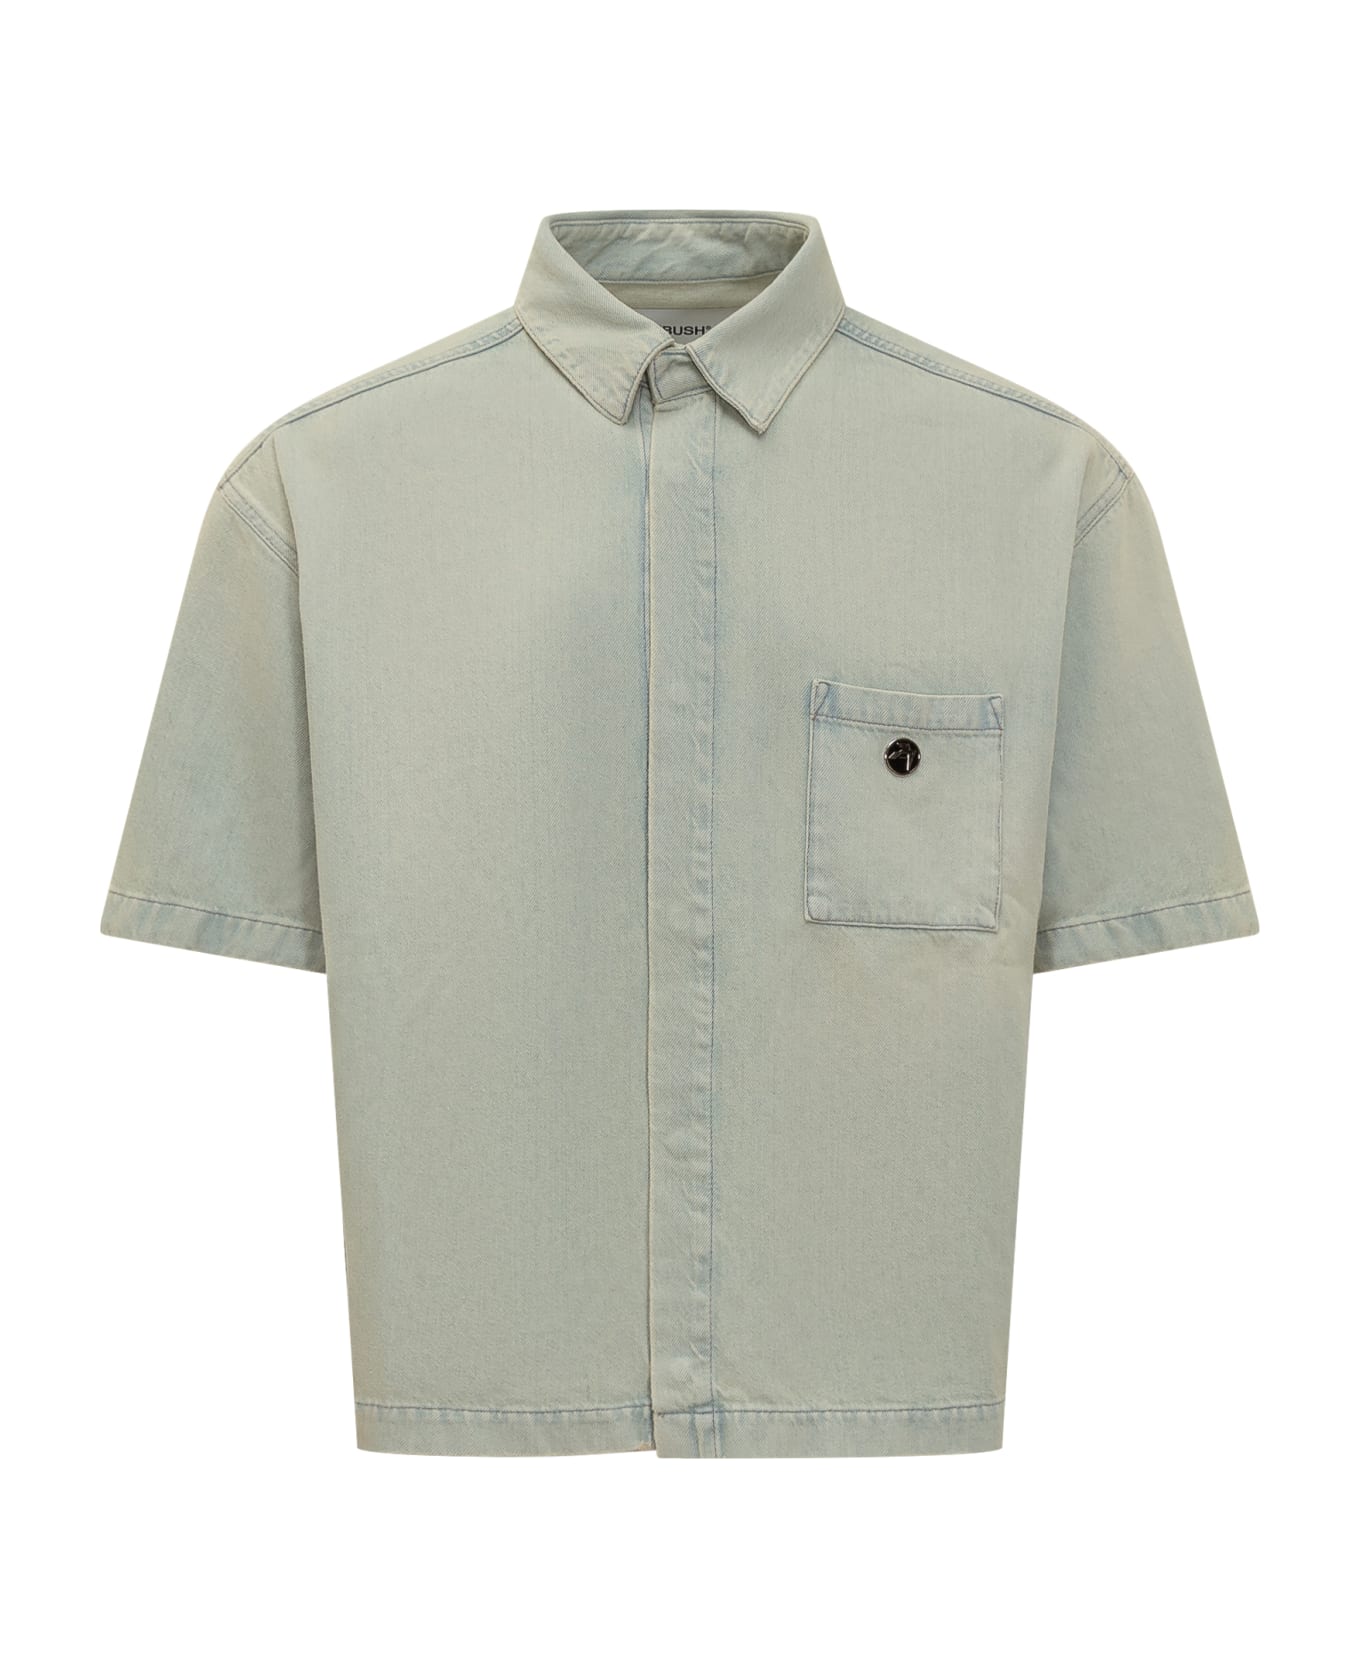 AMBUSH Boxy Denim Shirt - LIGHT BLUE シャツ